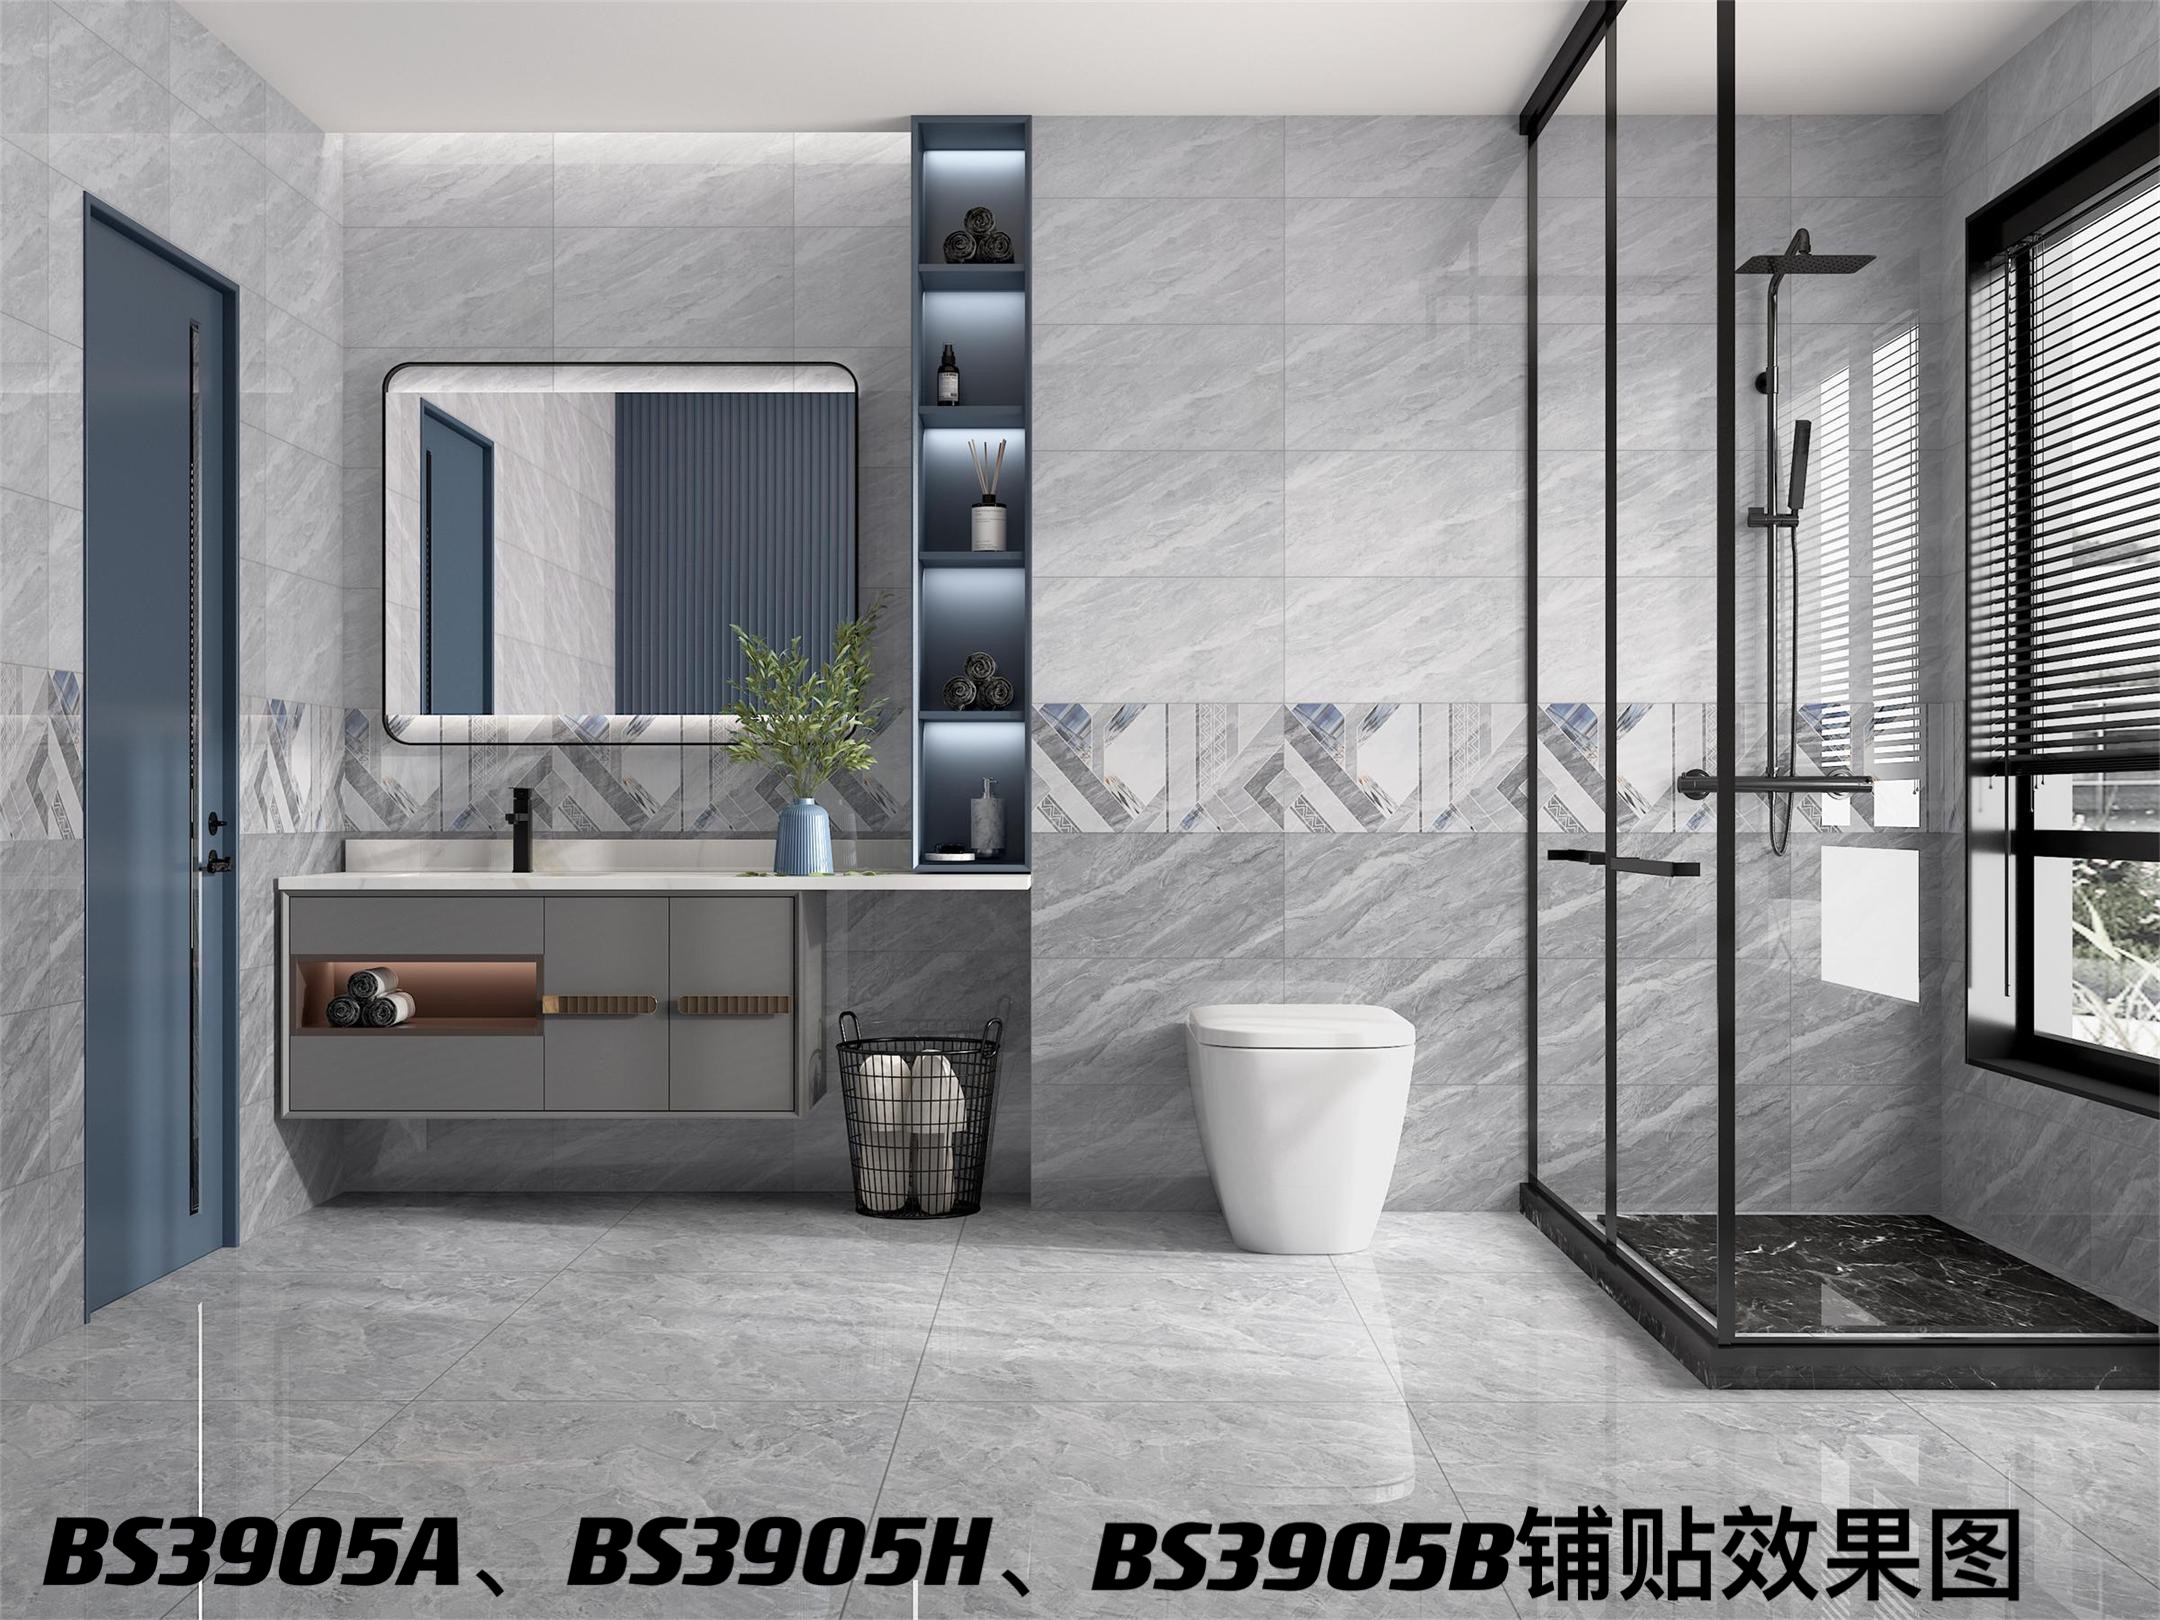 浴室自建房瓷砖贴连纹全瓷中板效果图.jpg